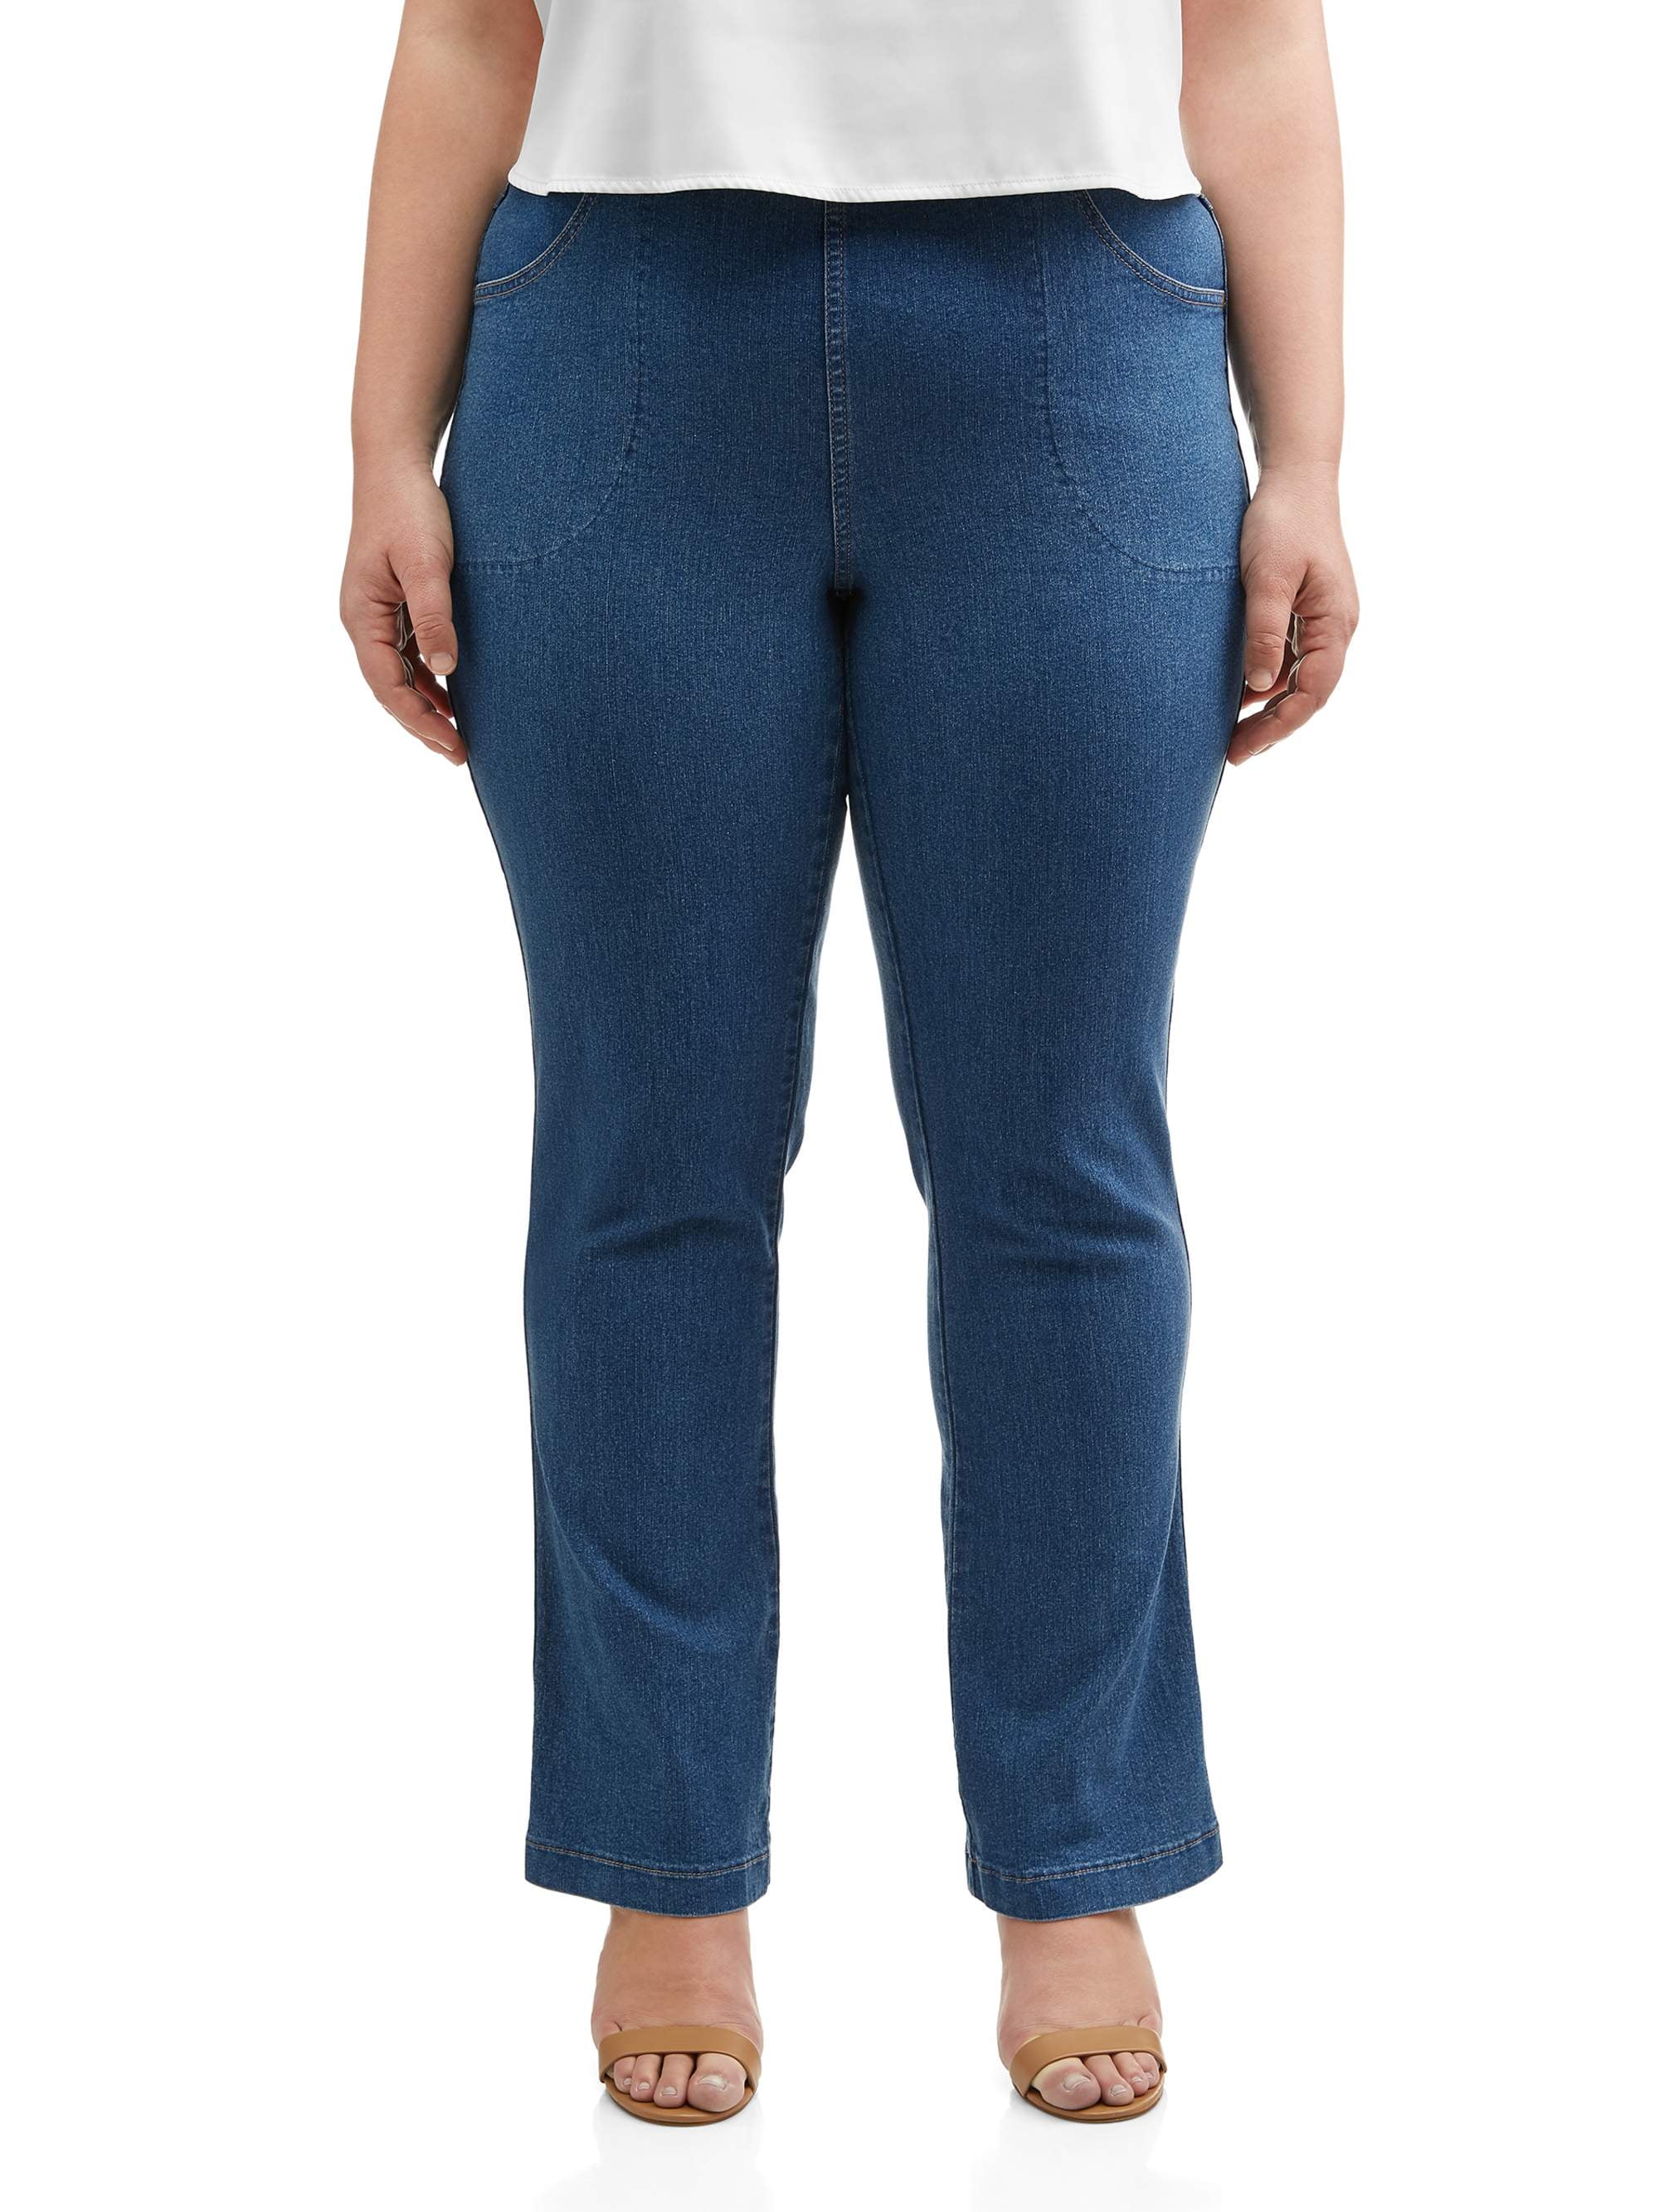 Buy > size 4 jeans > in stock